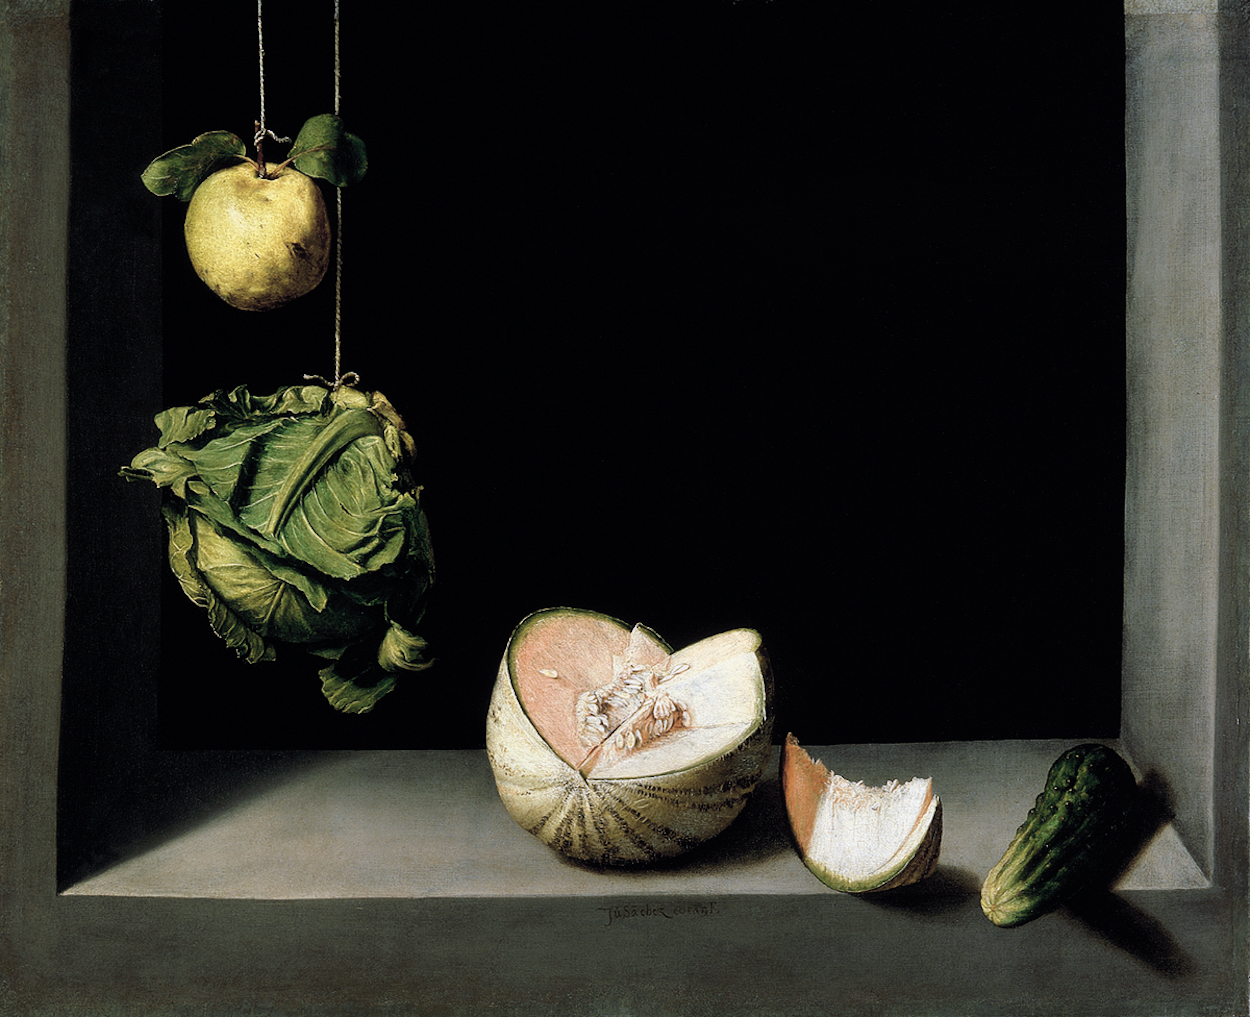 木梨、洋白菜、甜瓜和黄瓜的静物画 by 胡安 · 桑切斯 · 科坦 - ca. 1602 